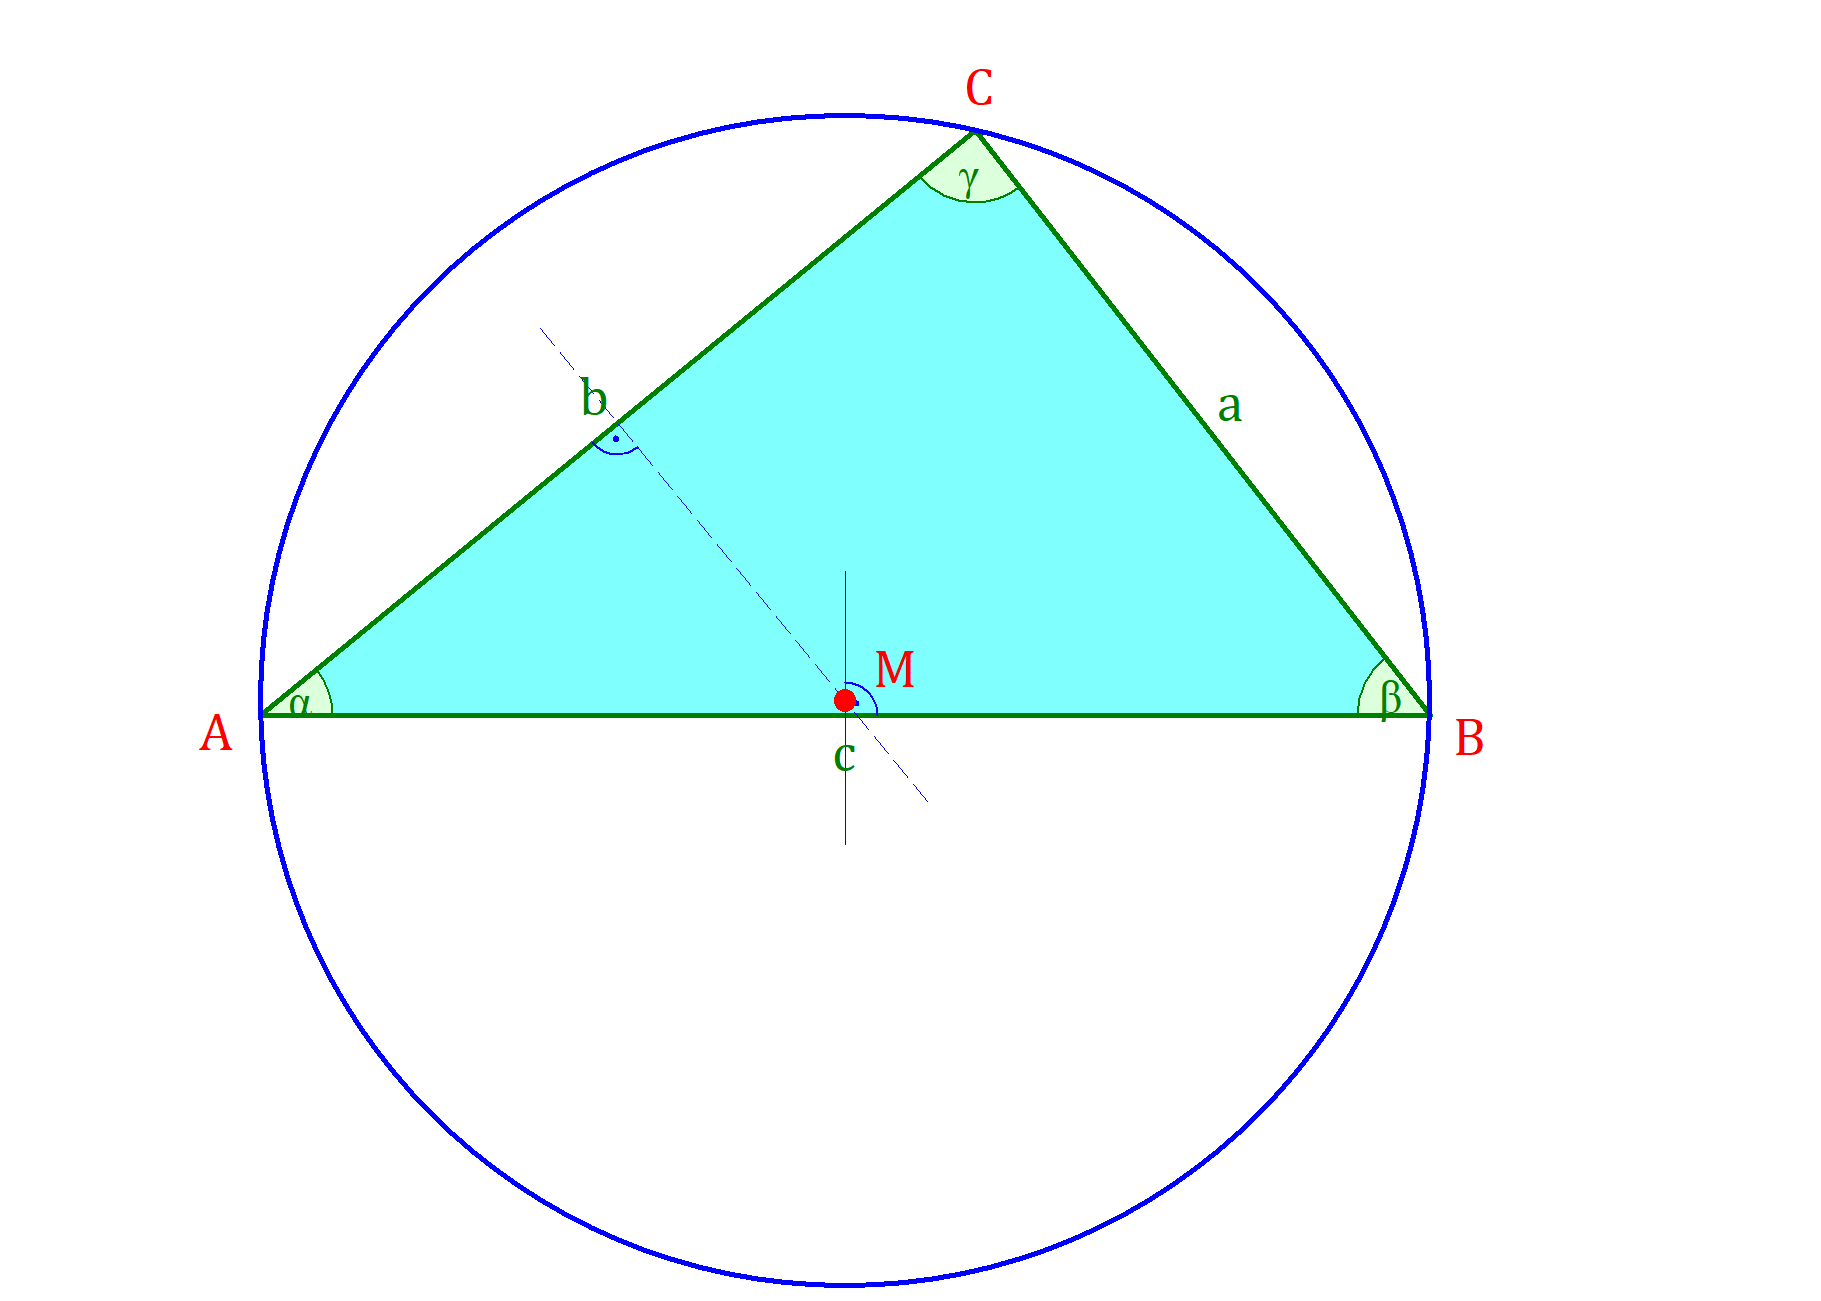 inkreis dreieck, umkreis dreieck, inkreis dreieck konstruieren, innenkreis dreieck, umkreis konstruieren, inkreis konstruieren, inkreis, inkreis eines dreieck, umkreismittelpunkt dreieck, umkreis eines dreiecks, umkreis dreieck konstruieren, umkreisradius dreieck, mittelsenkrechte umkreis, innenkreis dreieck konstruieren